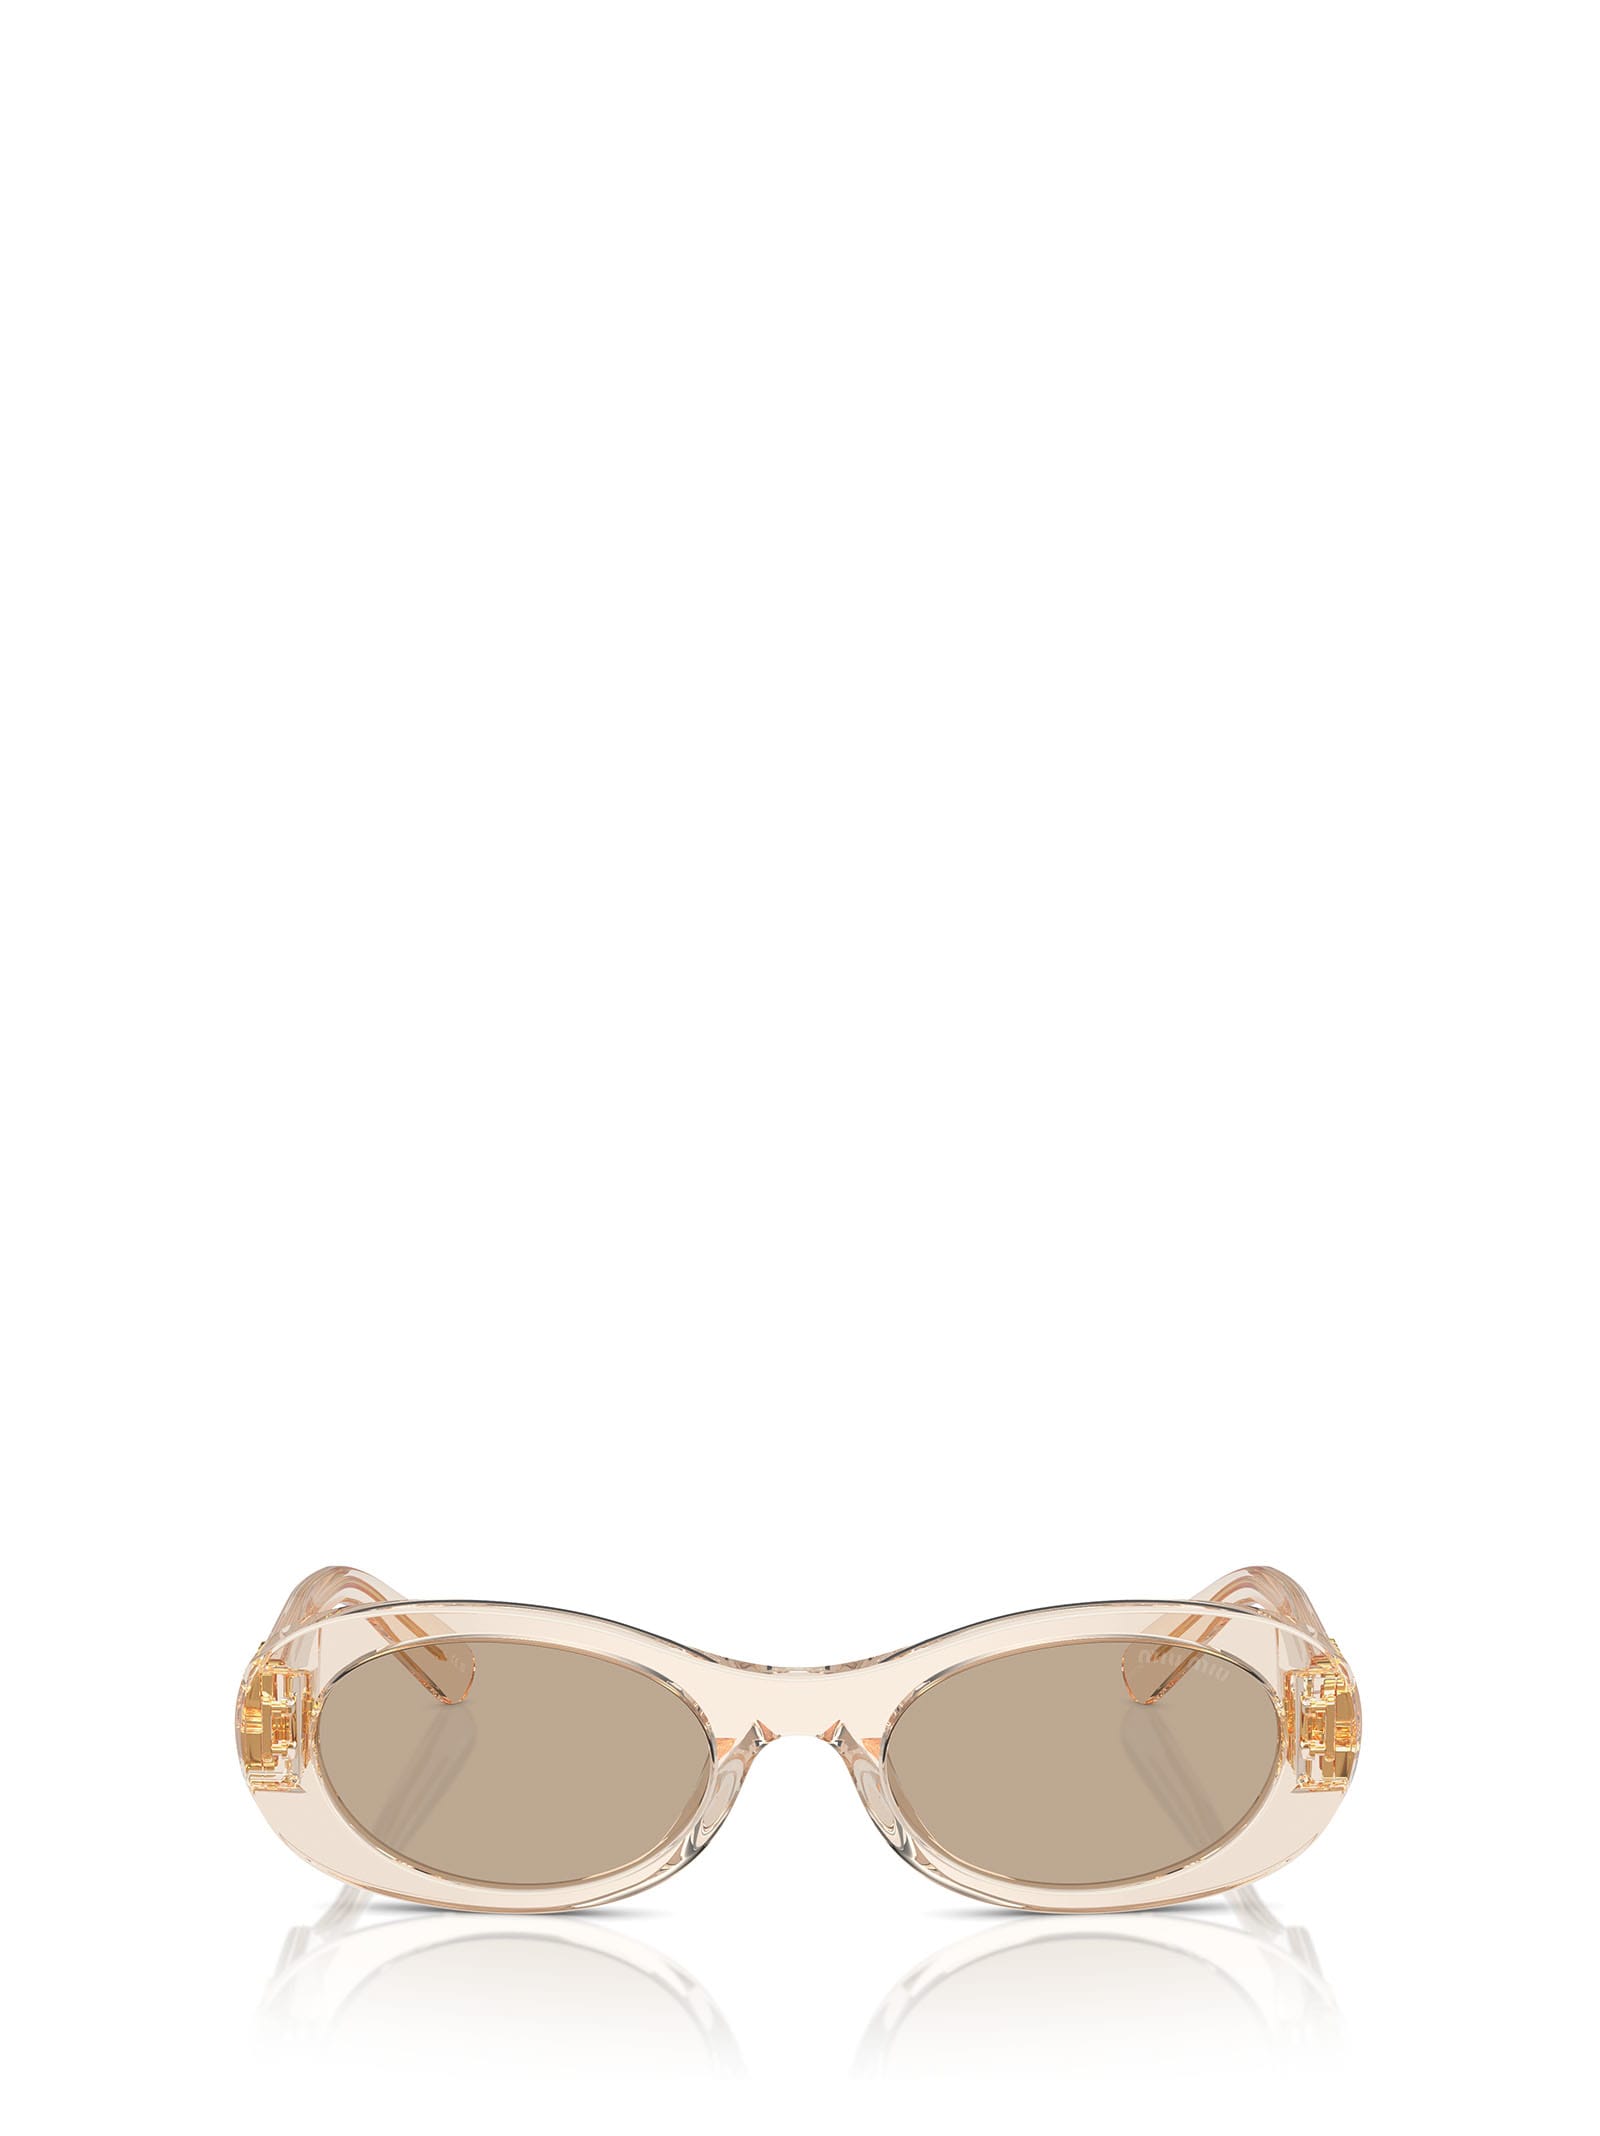 Miu Miu Mu 06zs Sand Transparent Sunglasses